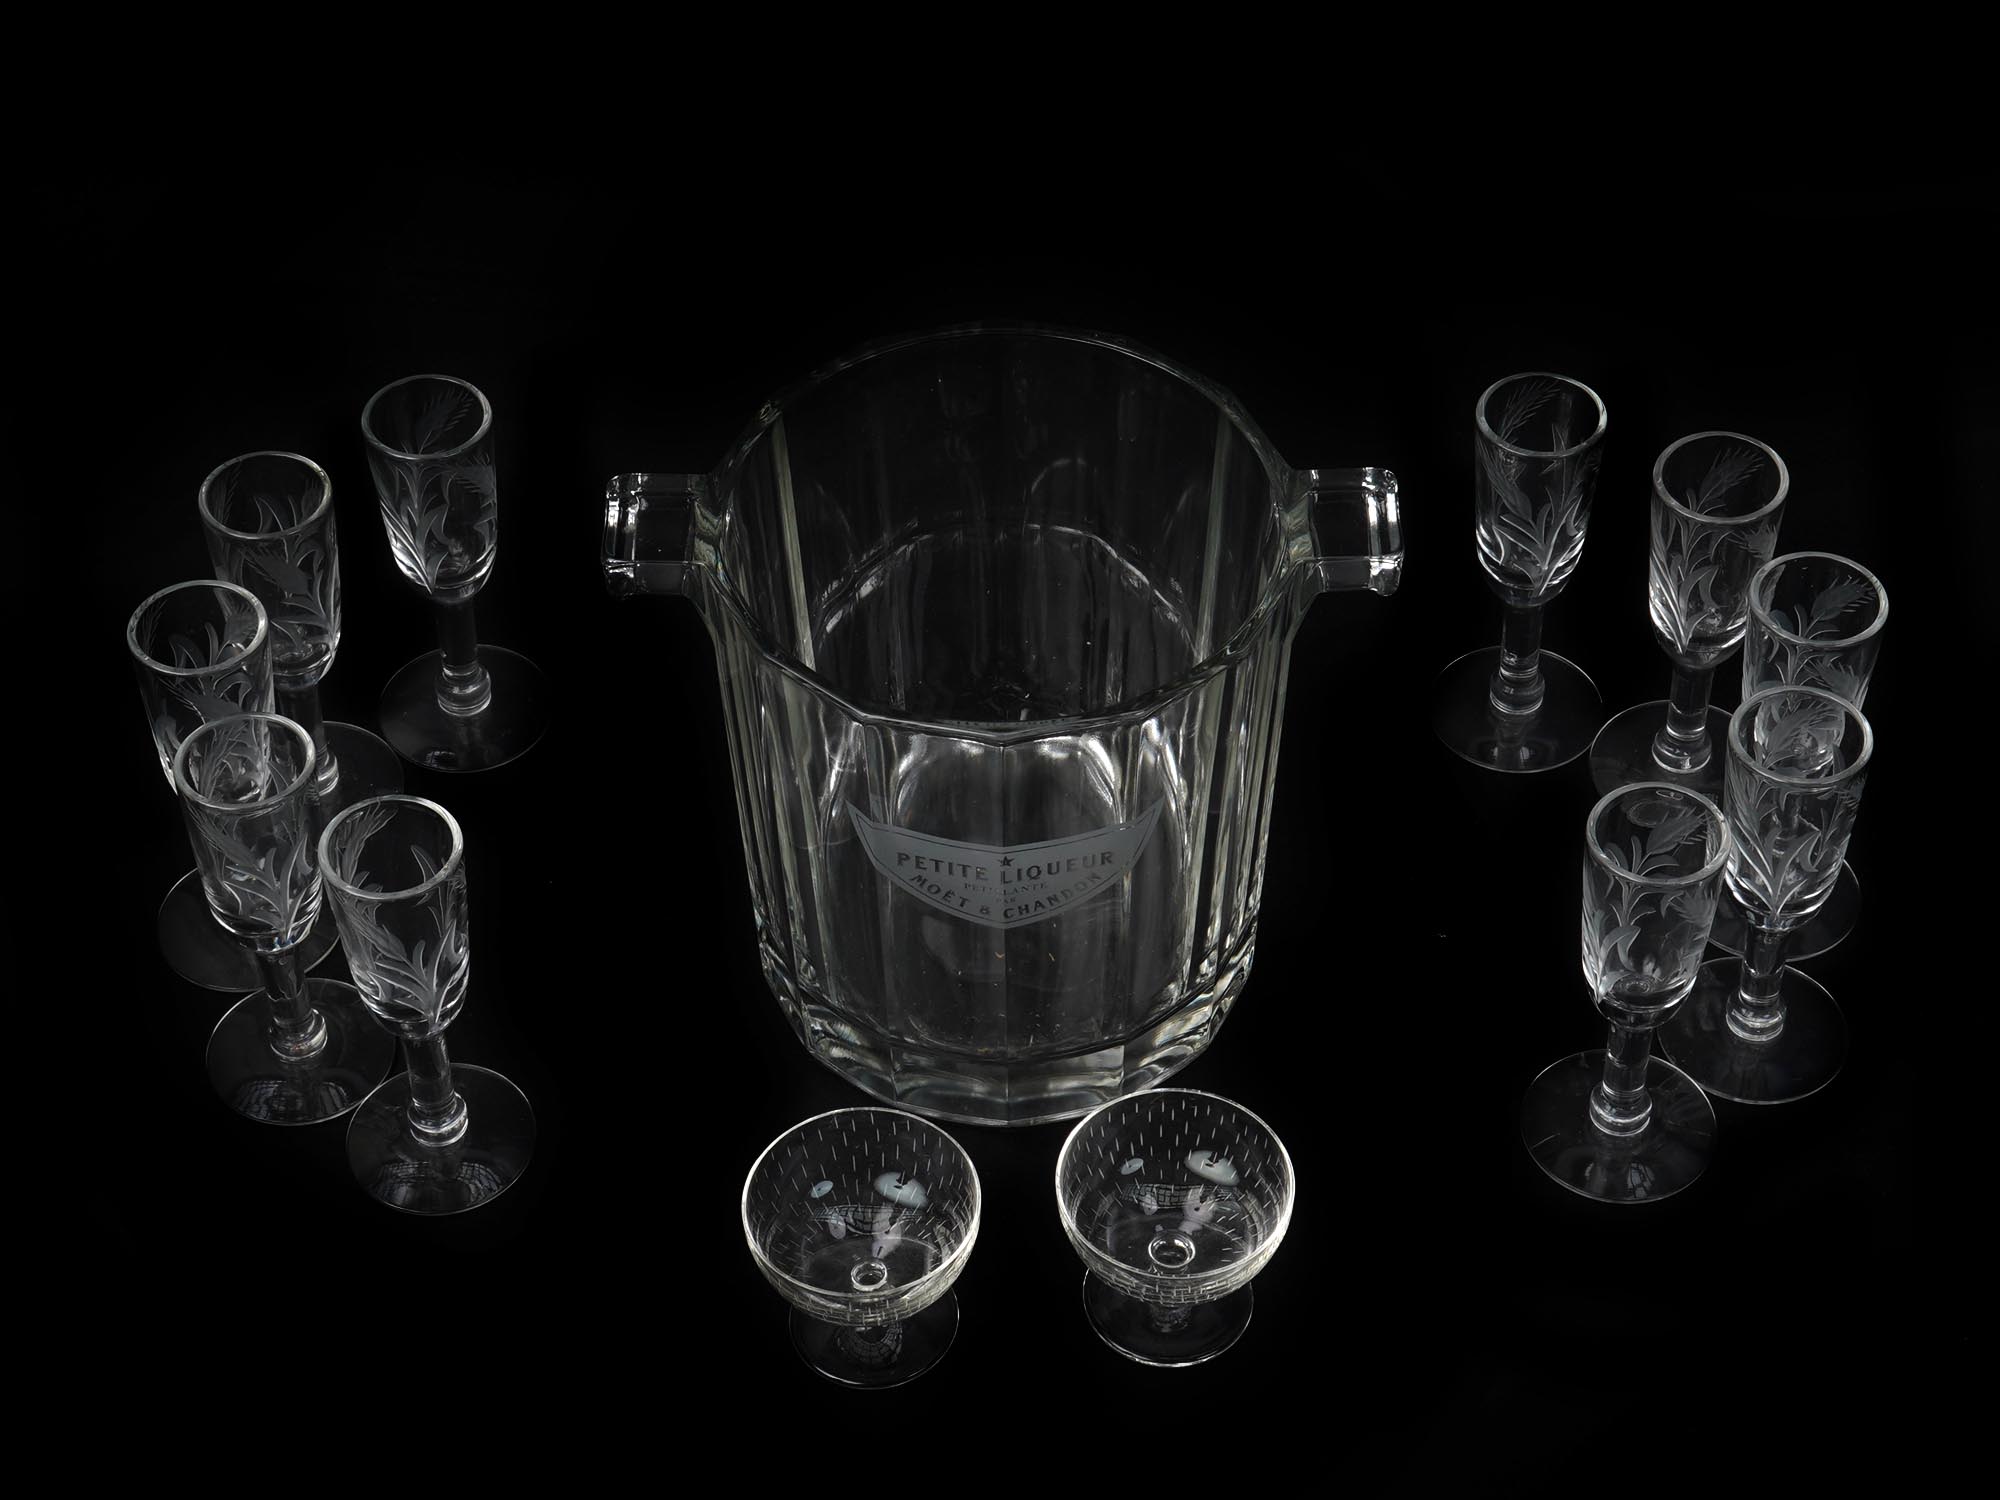 MID CENTURY PETITE LIQUER MOET CHANDON GLASS SET PIC-2